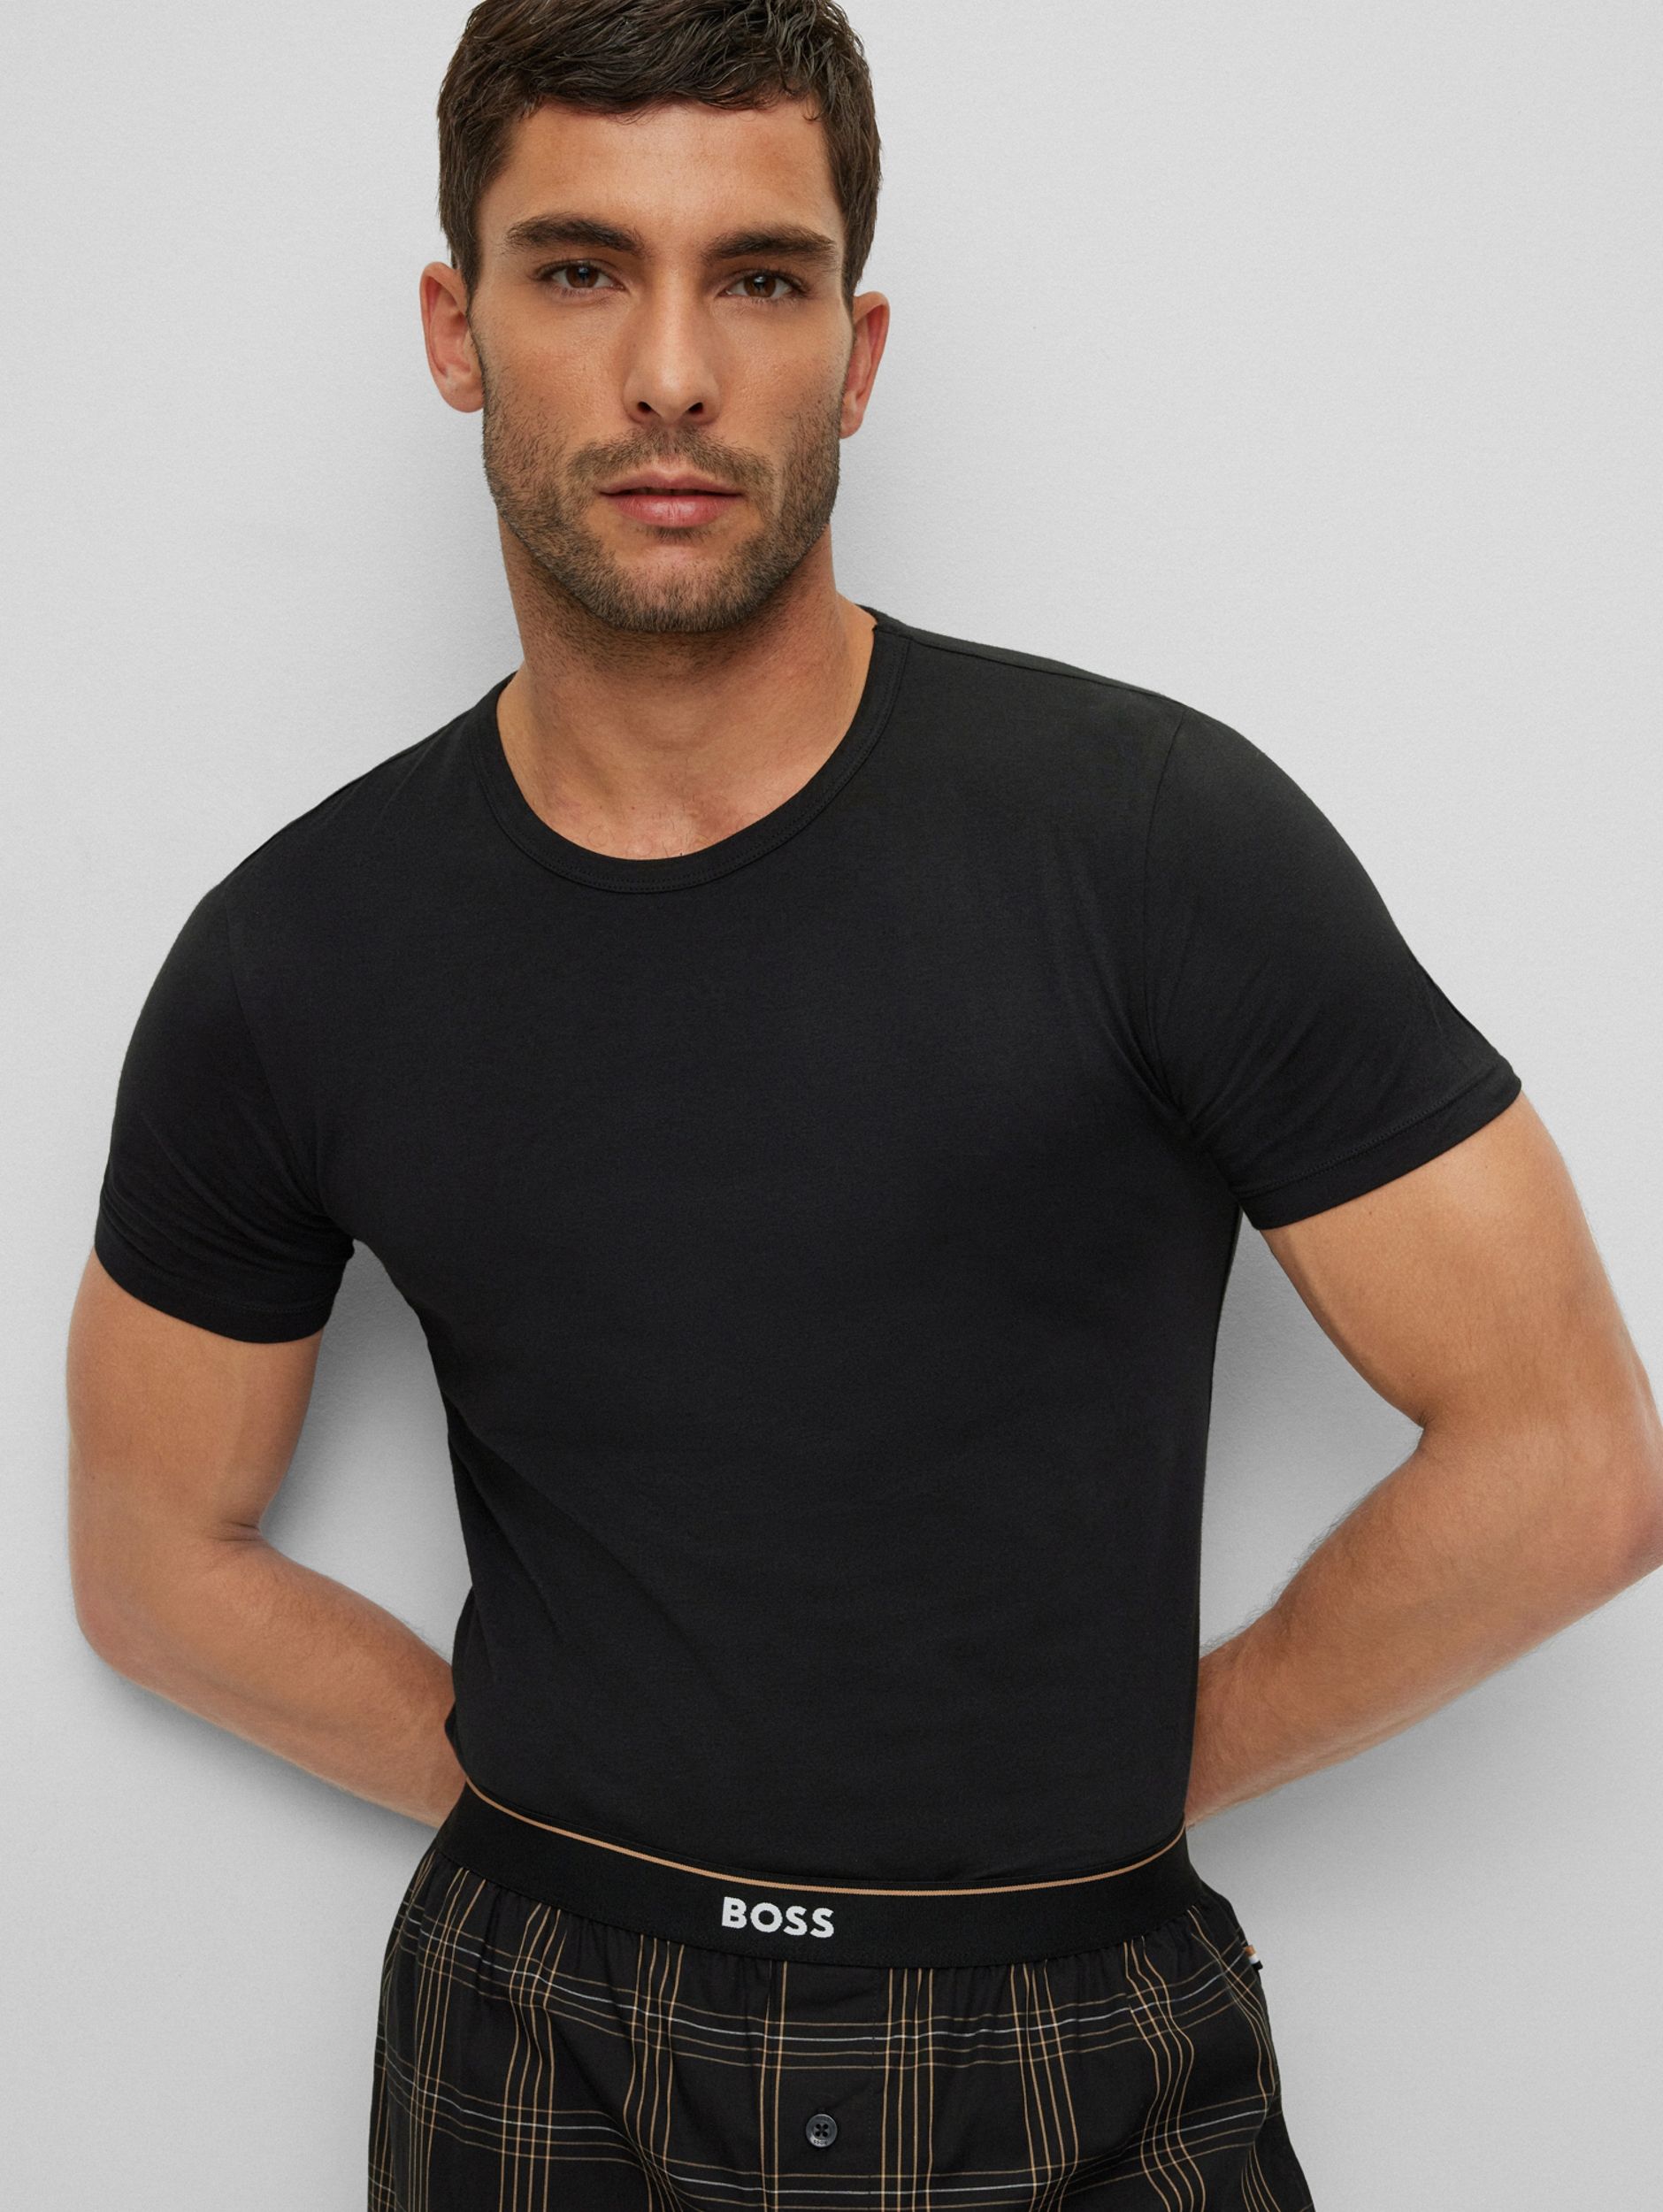 Hugo Boss Menswear R-neck 2 Pack T-shirt KM Zwart 082265-001-L